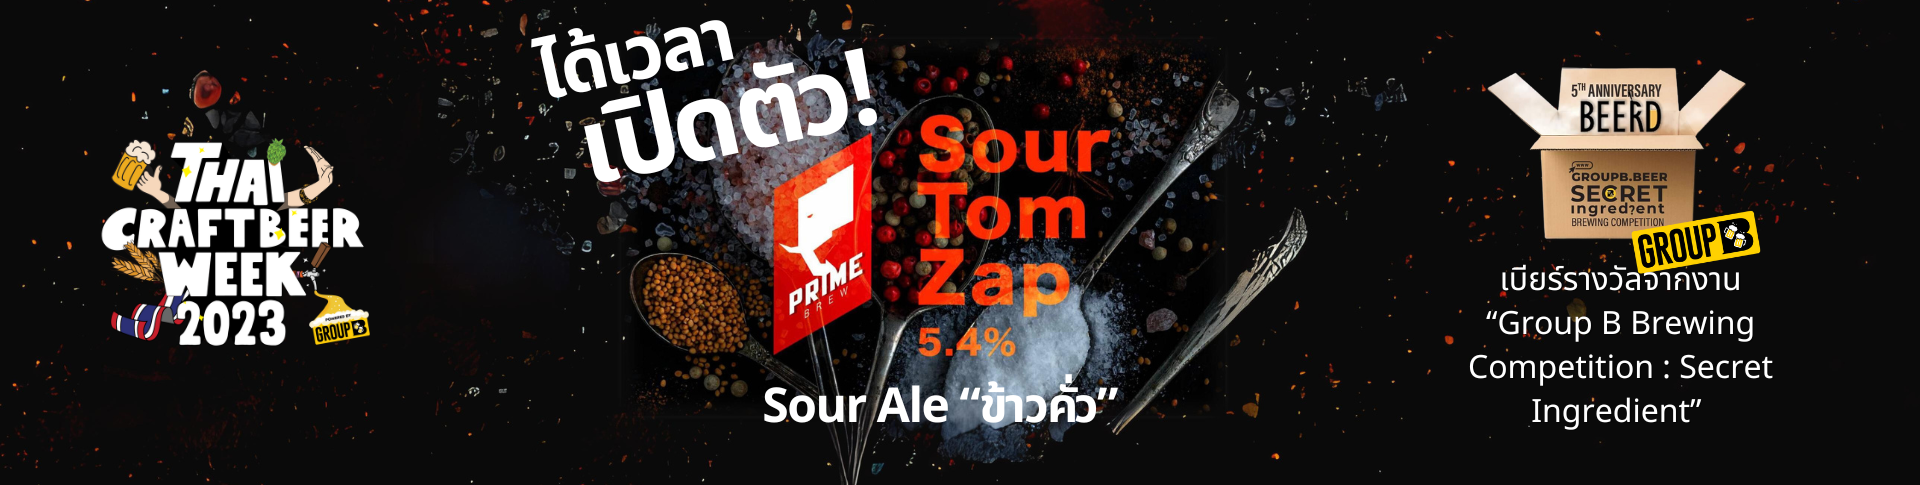 เปิดตัวเบียร์ “SourTom Zap”Sour Ale ข้าวคั่ว @What da ale